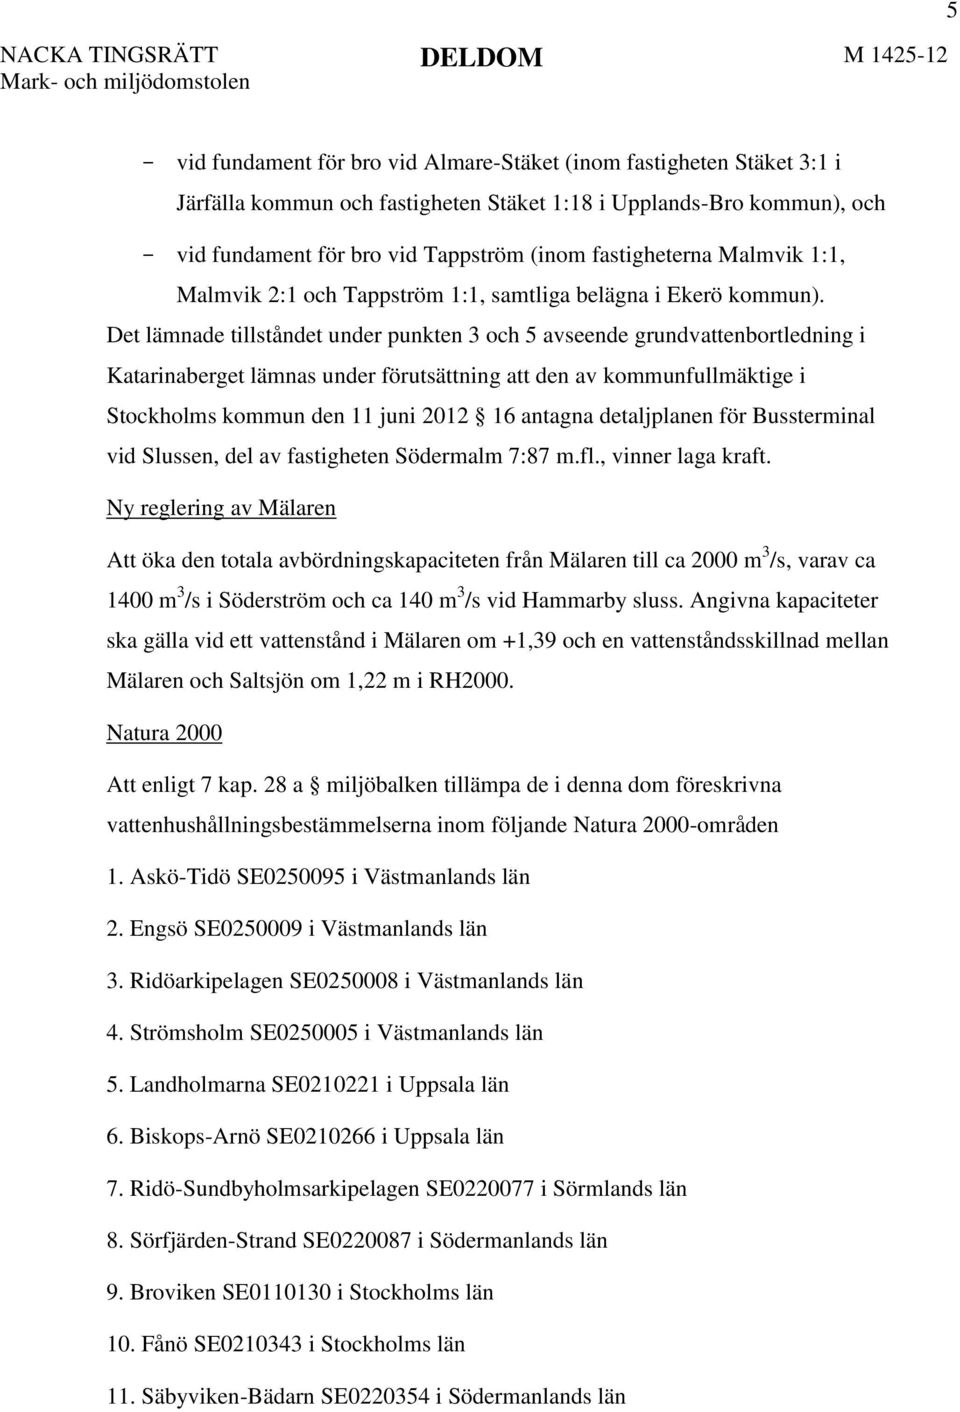 Det lämnade tillståndet under punkten 3 och 5 avseende grundvattenbortledning i Katarinaberget lämnas under förutsättning att den av kommunfullmäktige i Stockholms kommun den 11 juni 2012 16 antagna